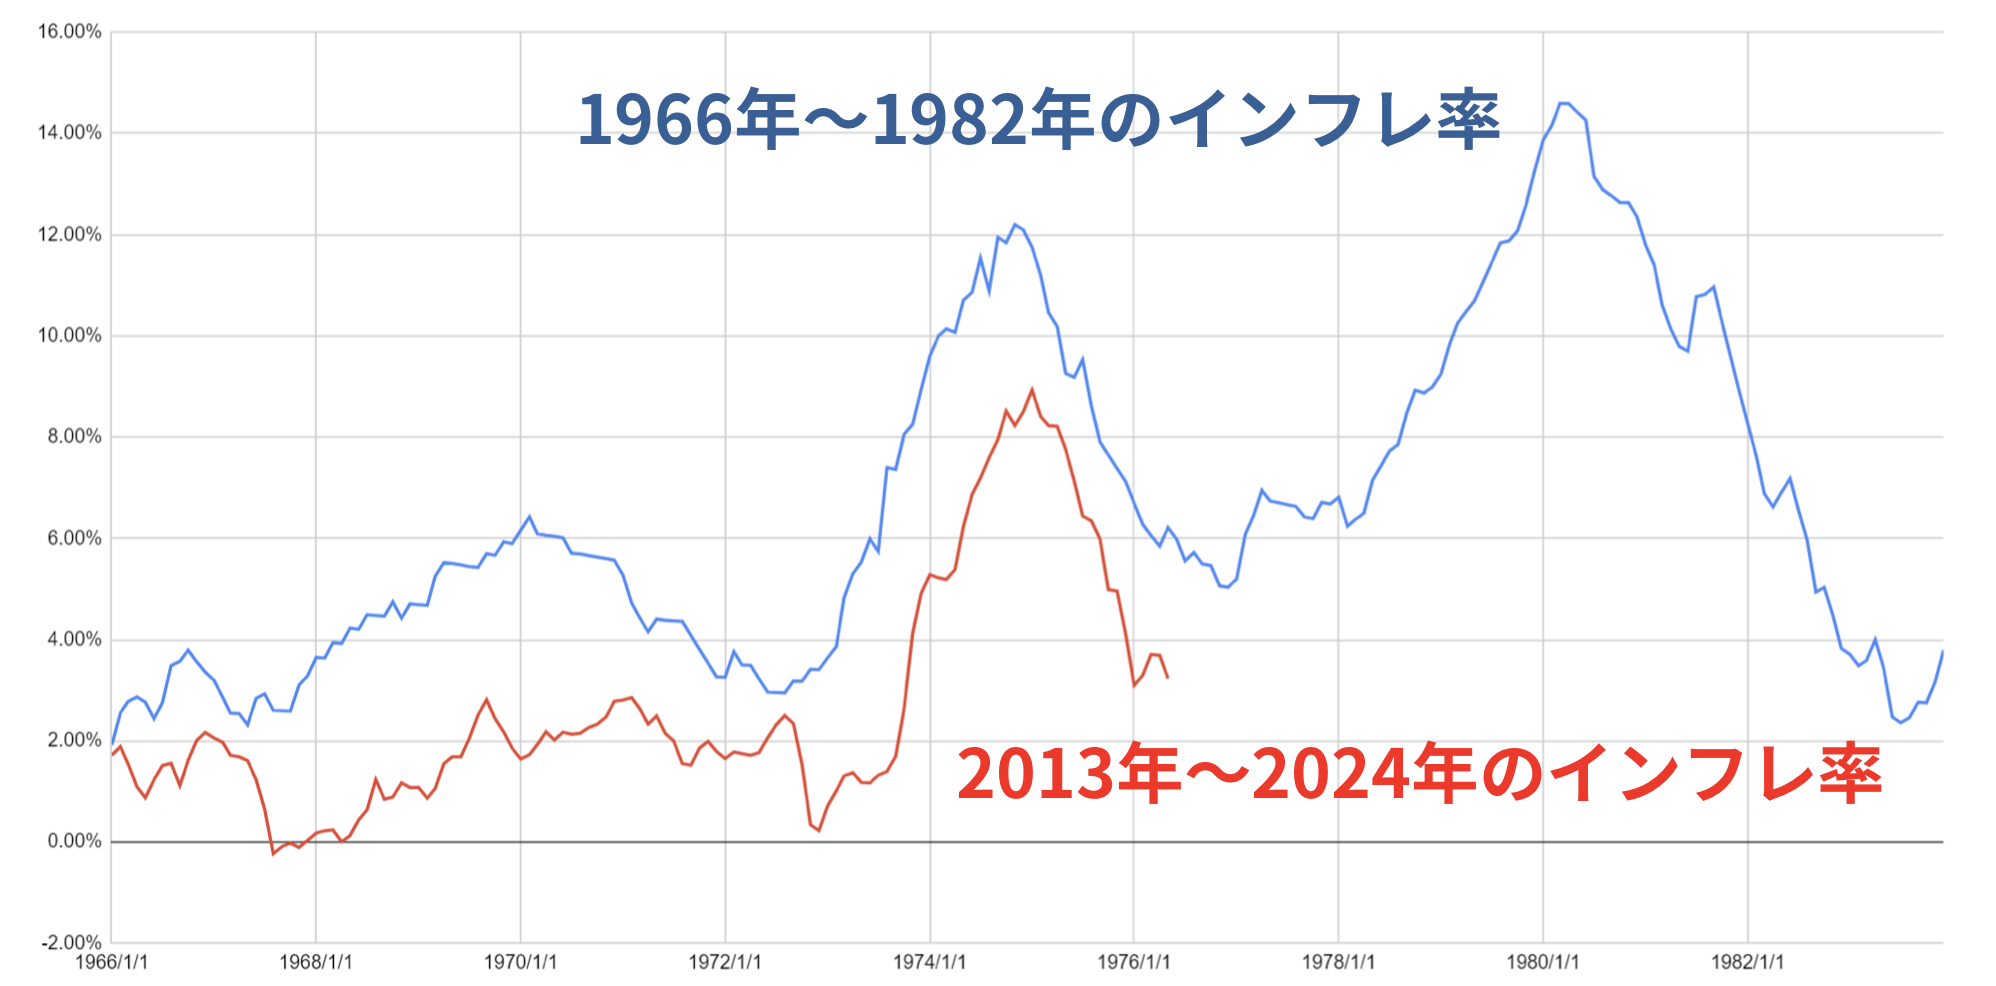 現在のインフレ率は1970年代のインフレ率と酷似